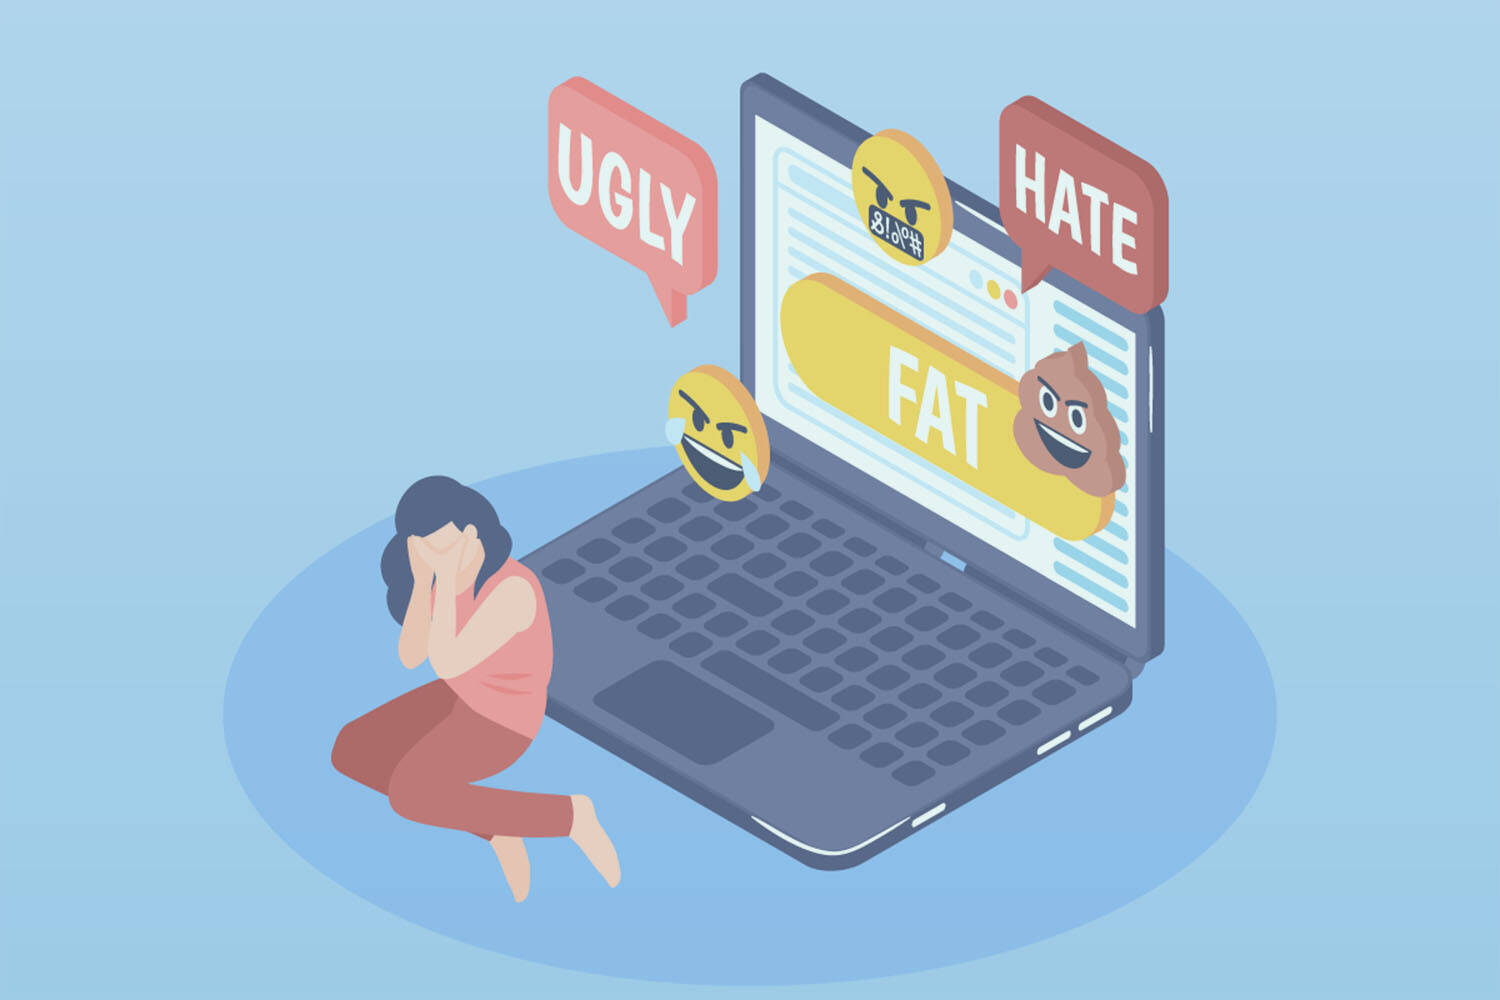 Bắt nạt trực tuyến (Cyberbullying) - Học sinh suy sụp vì bị bắt nạt trên mạng!